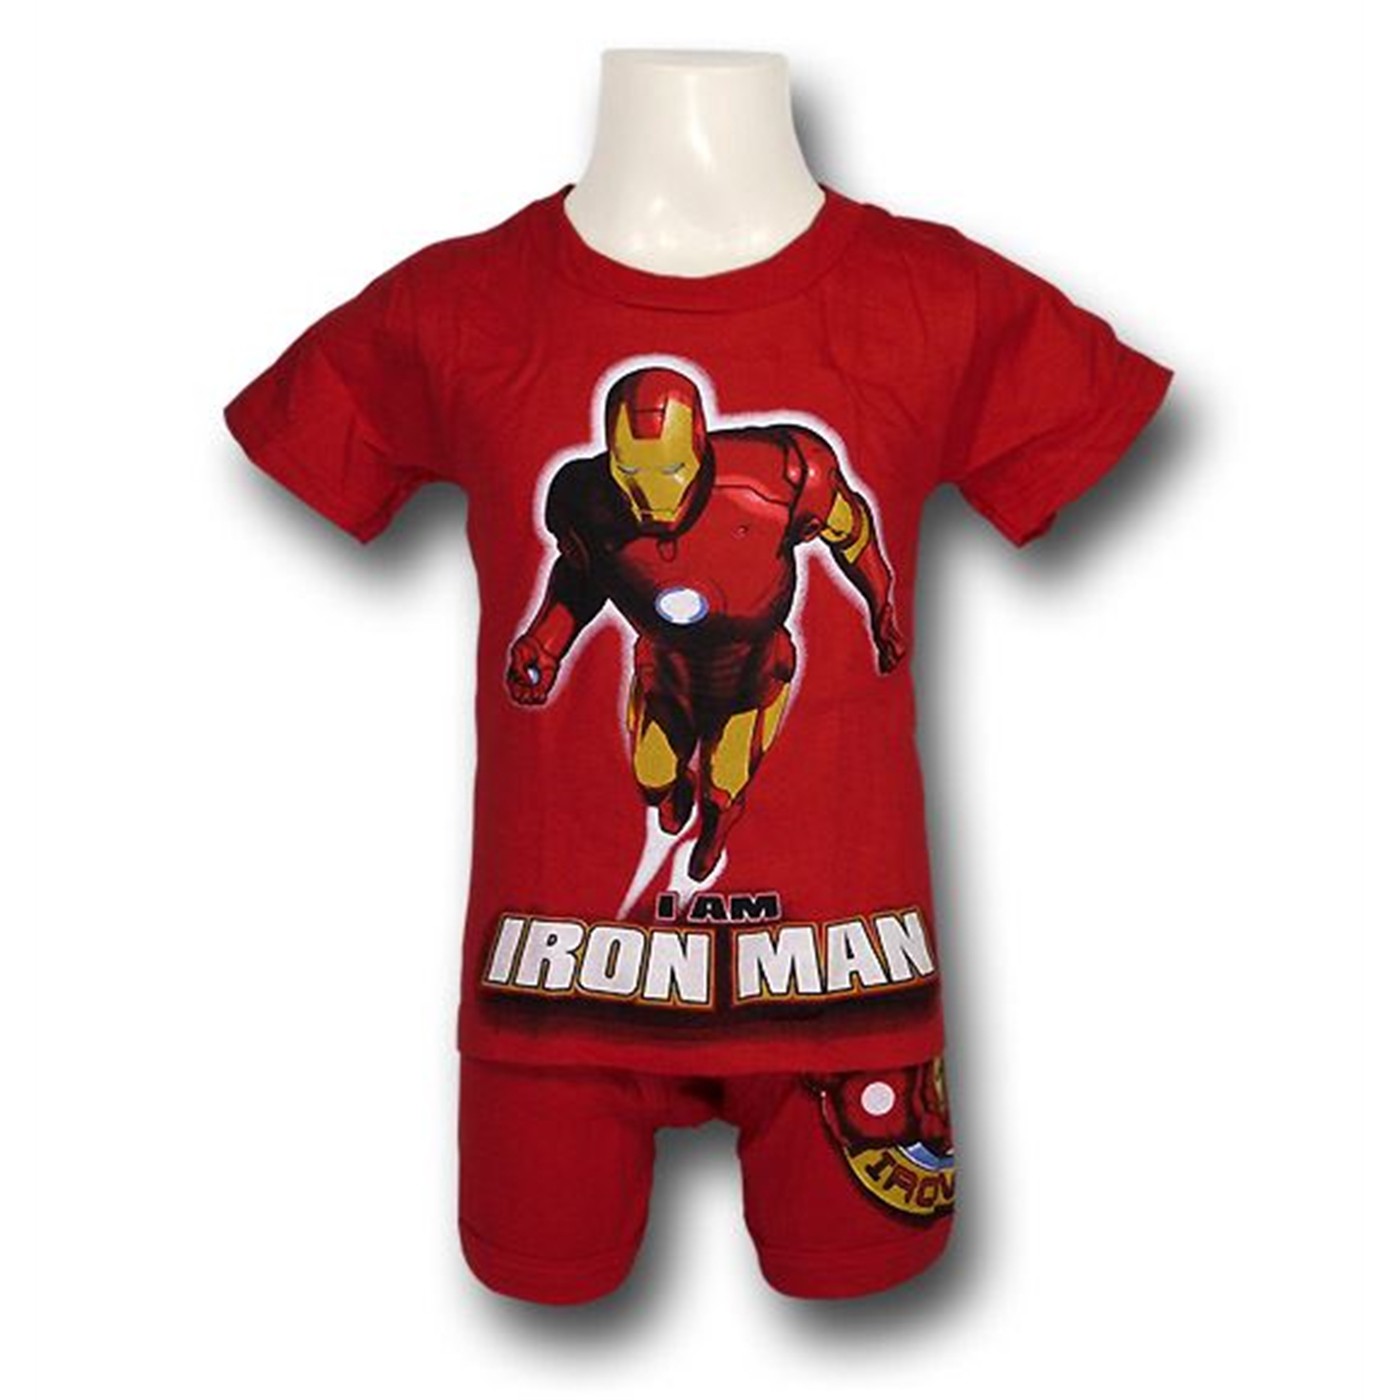 Iron Man Juvenile Red Boxer Brief Set